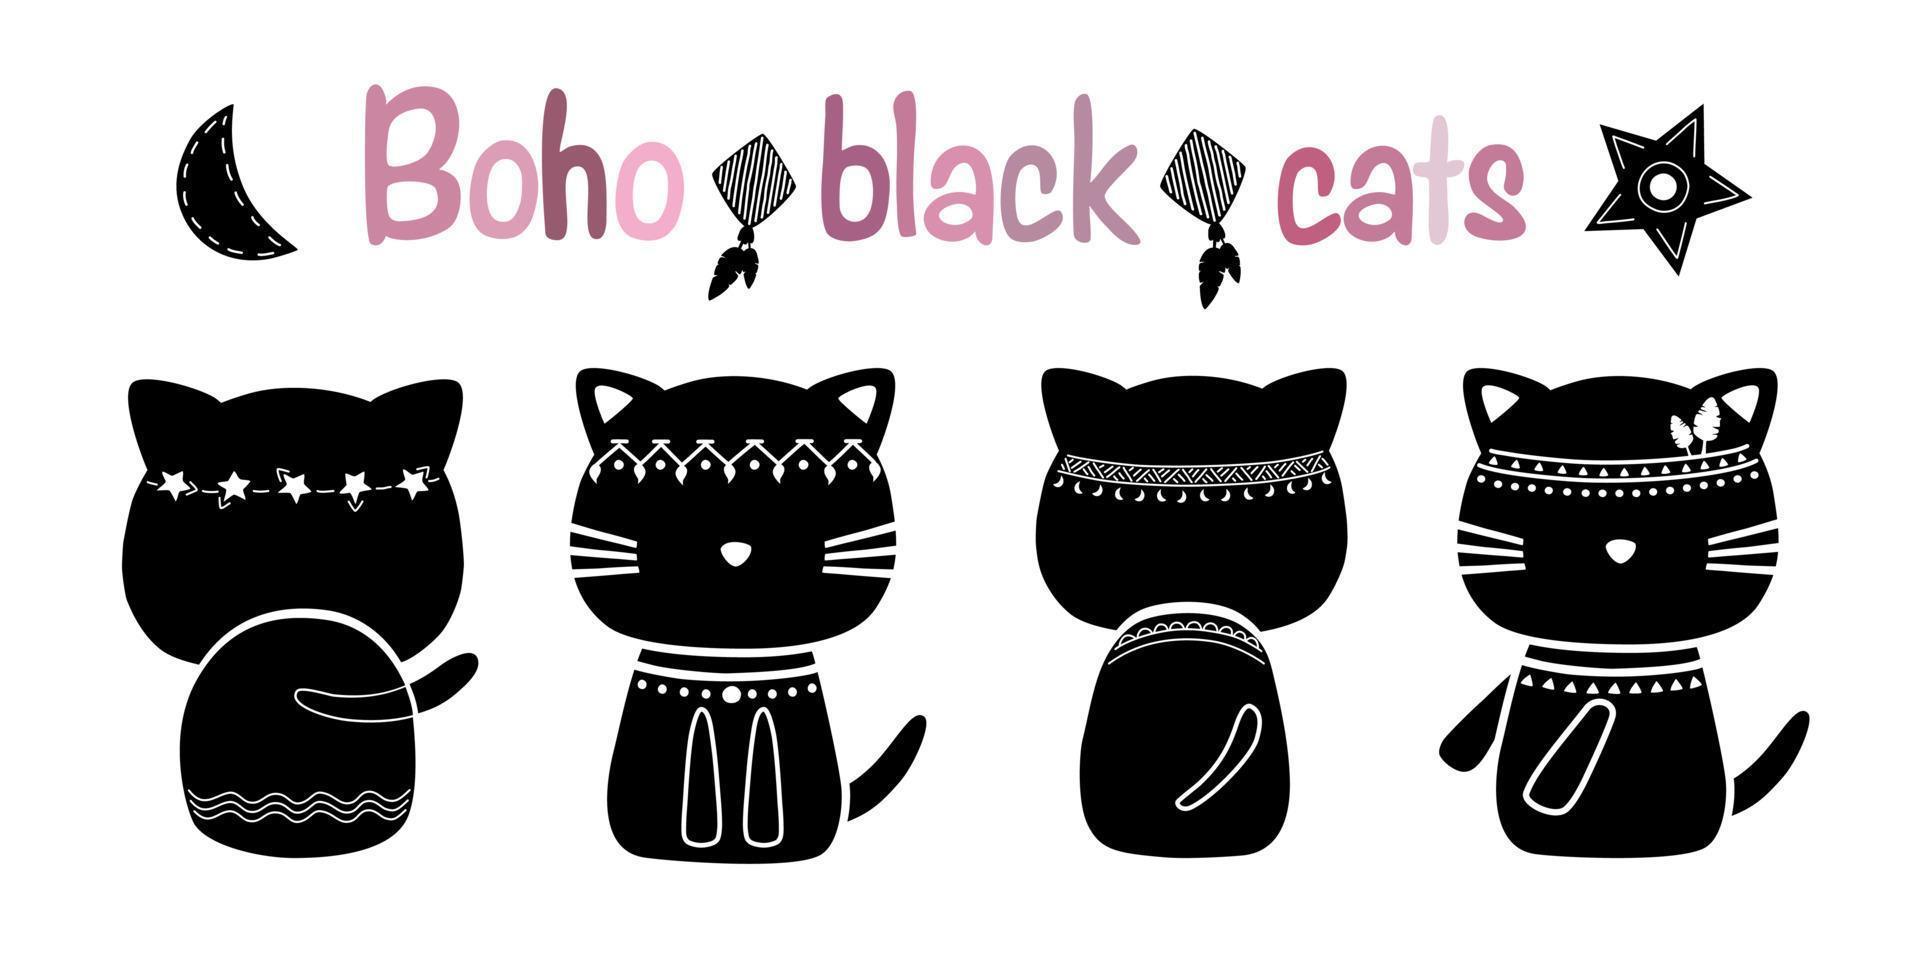 zwarte boho-katten, eenvoudig ontwerp in zwarte toon kan in verschillende toepassingen worden toegepast vector